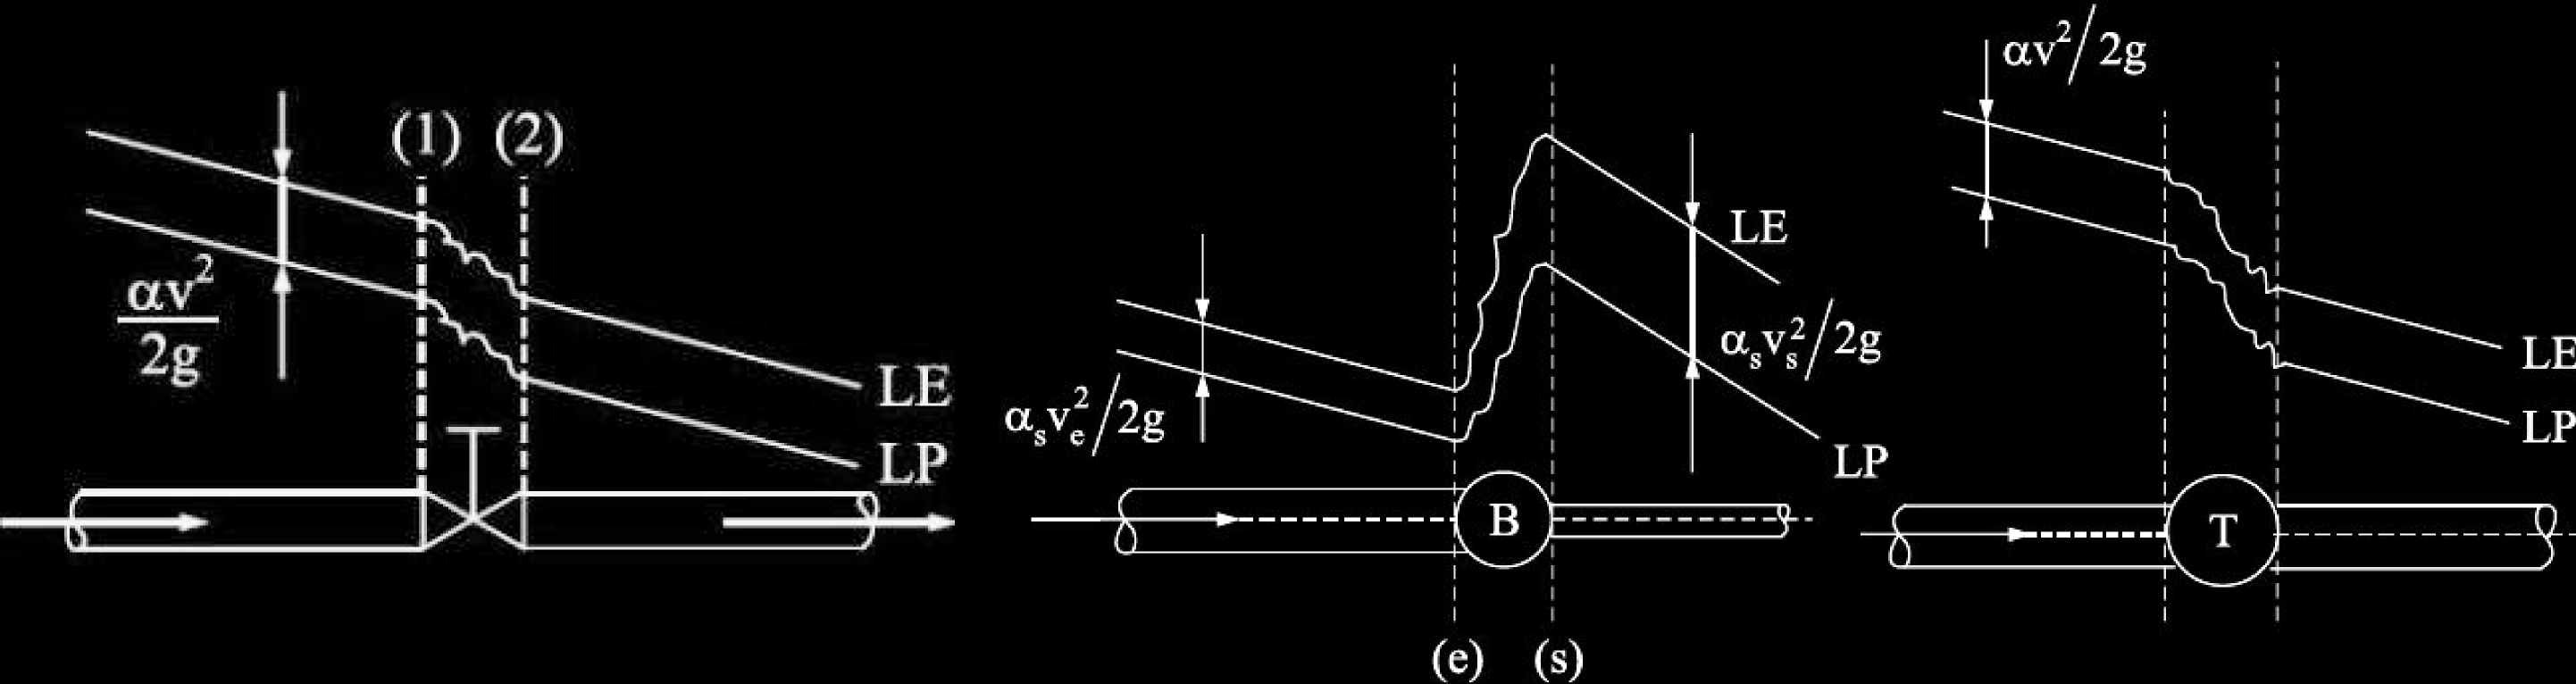 Instalações de recalque Considerações sobre linhas de energia e piezométrica Para perdas de carga singulares, as LE e LP não tem andamento definido, sendo